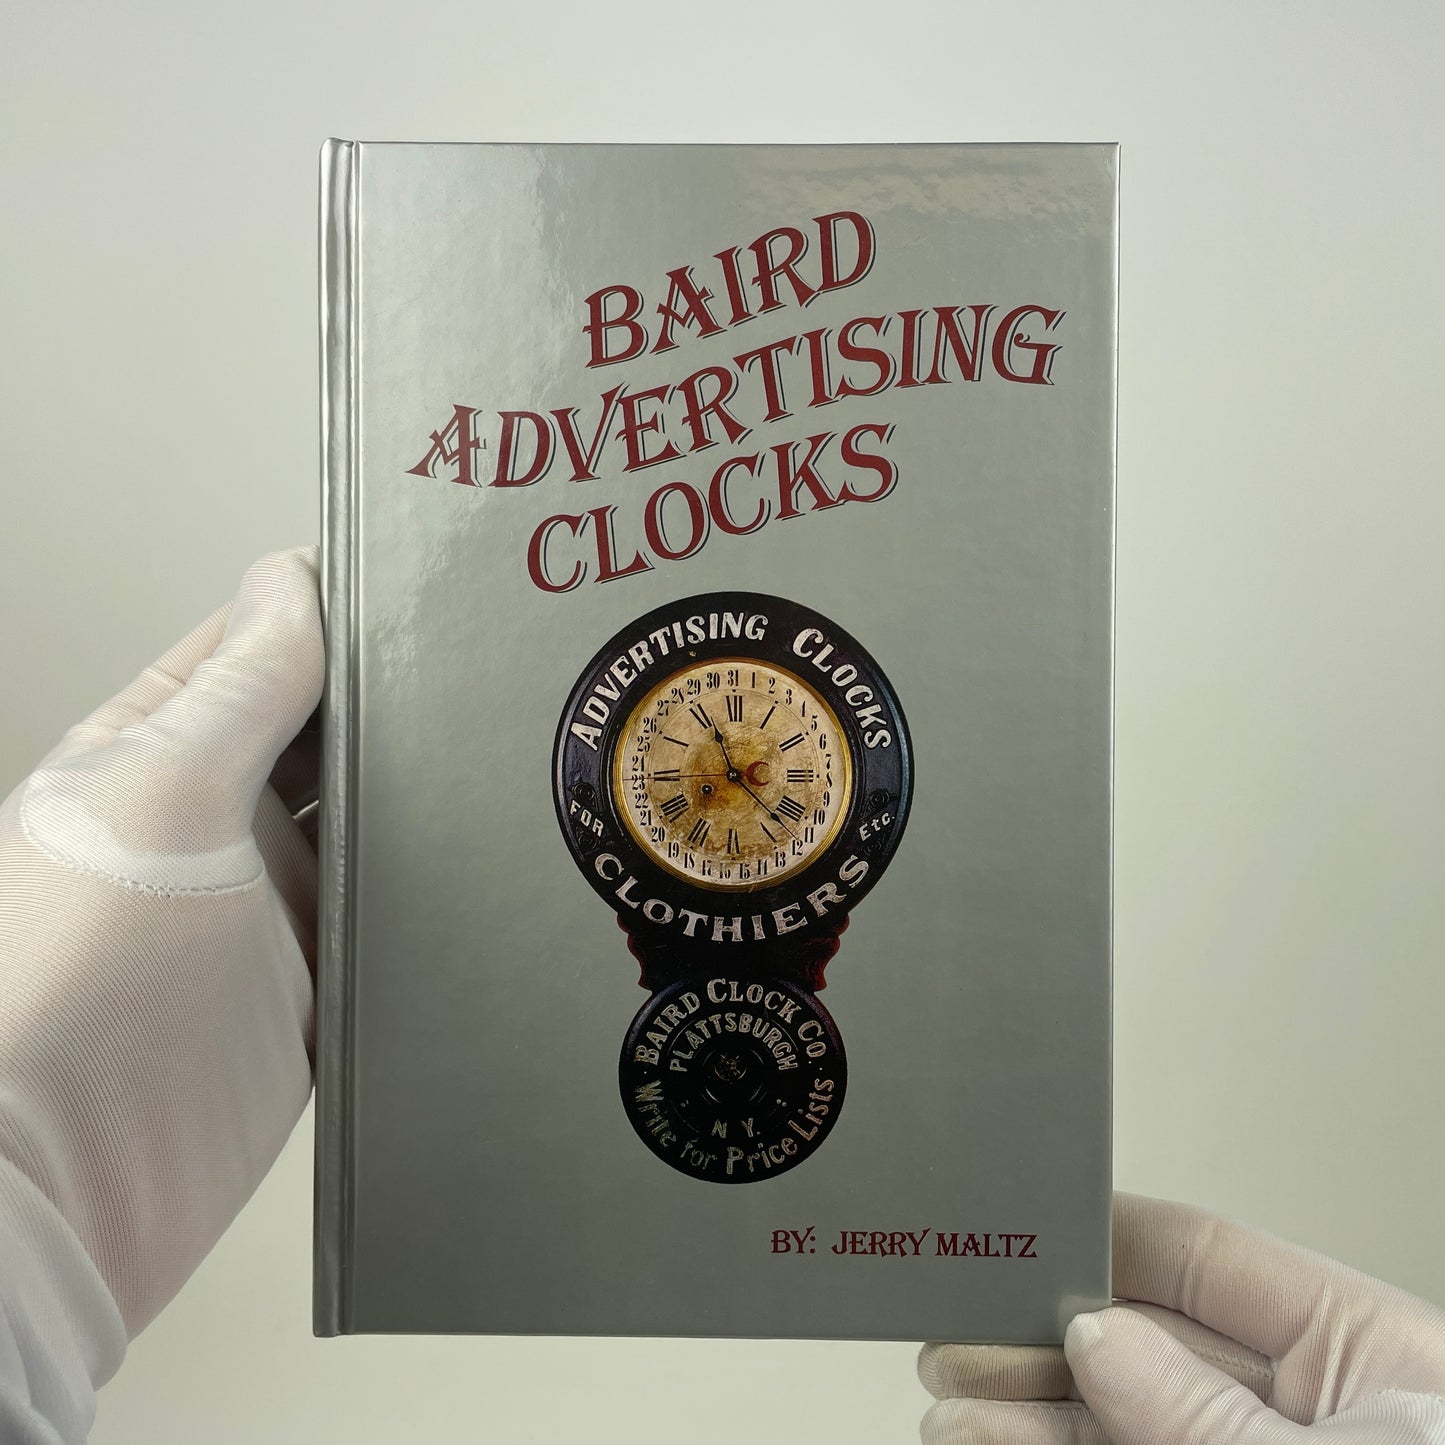 Baird Advertising Clocks